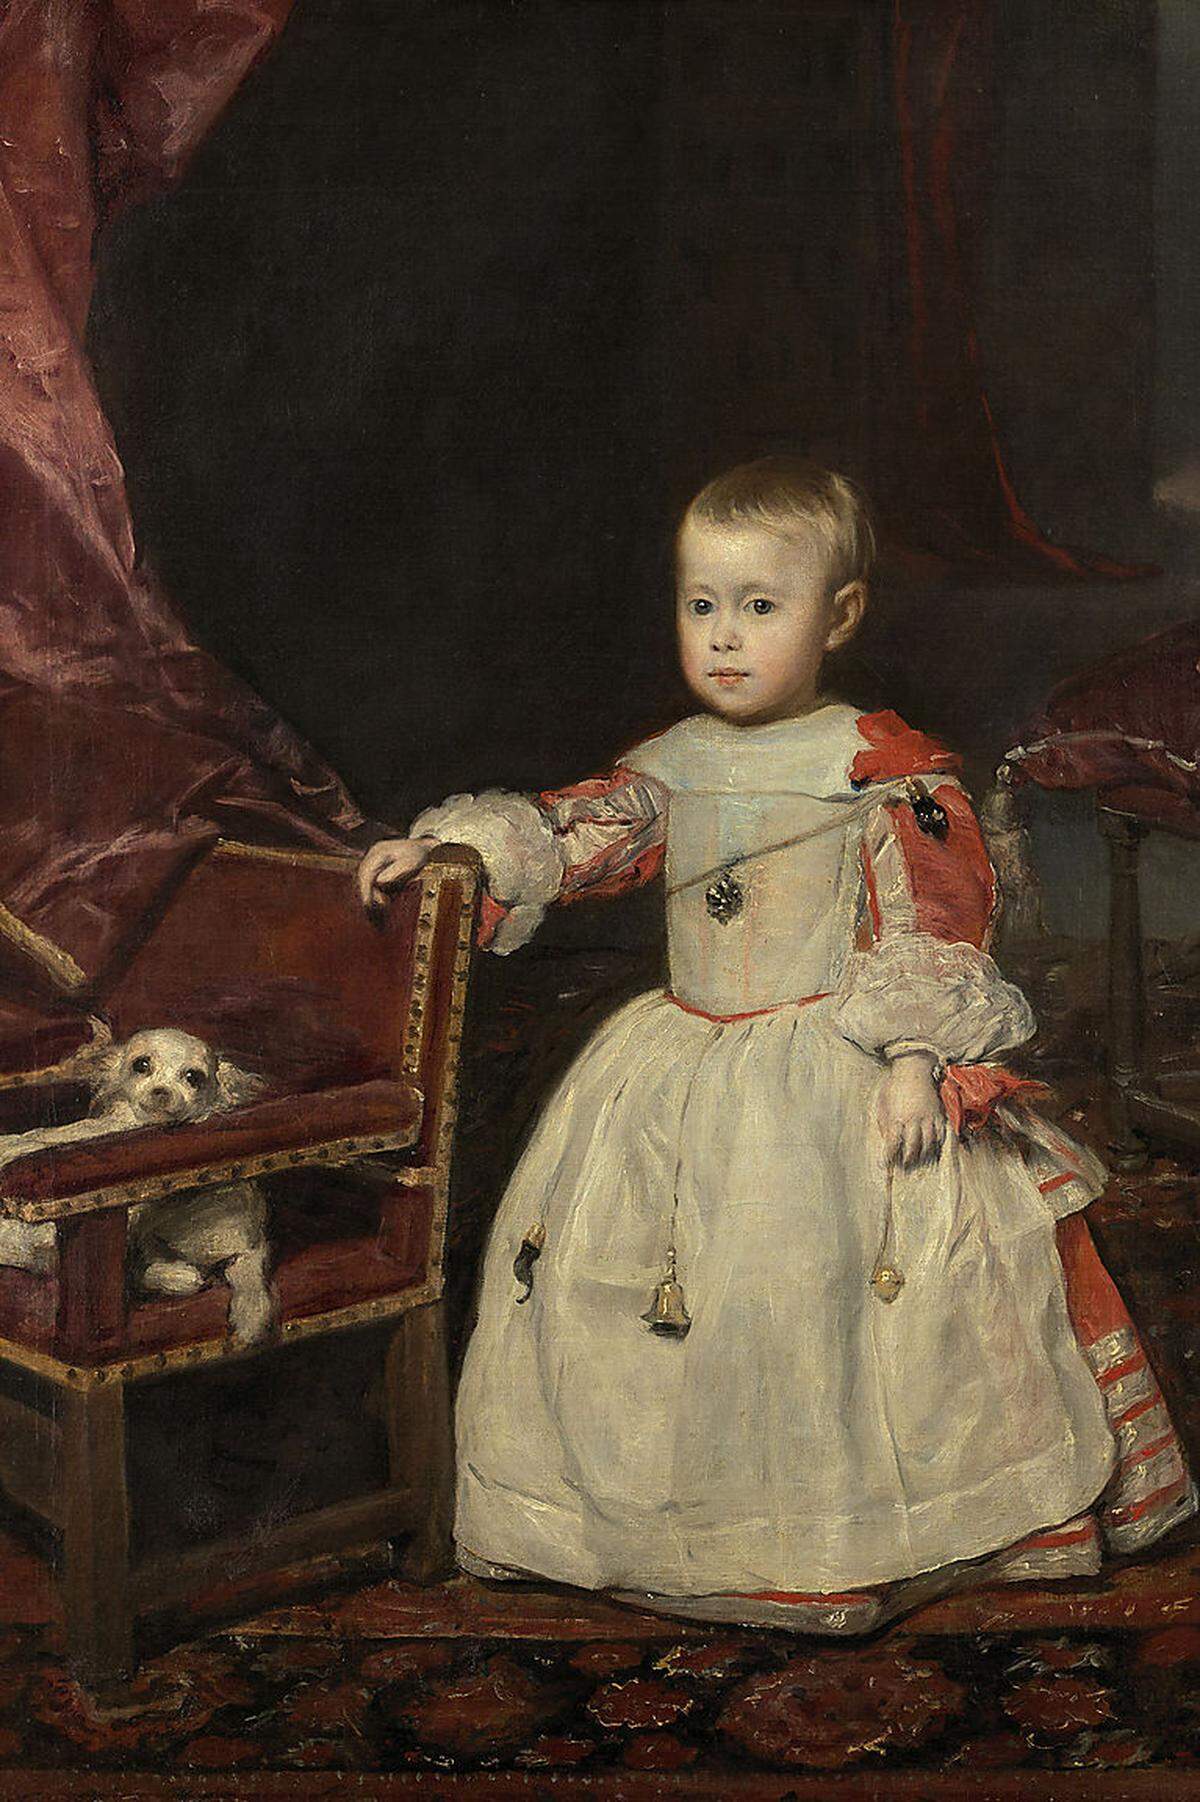 1657 gebar Maria Anna von Österreich den lang ersehnten Kronprinzen. Felipe Prospero war von Anfang an kränklich, Velázquez fing das mit Amuletten und Glücksbringern behangene Kind ein - das Bild ist eines seiner letzten und vollendetsten Werke.